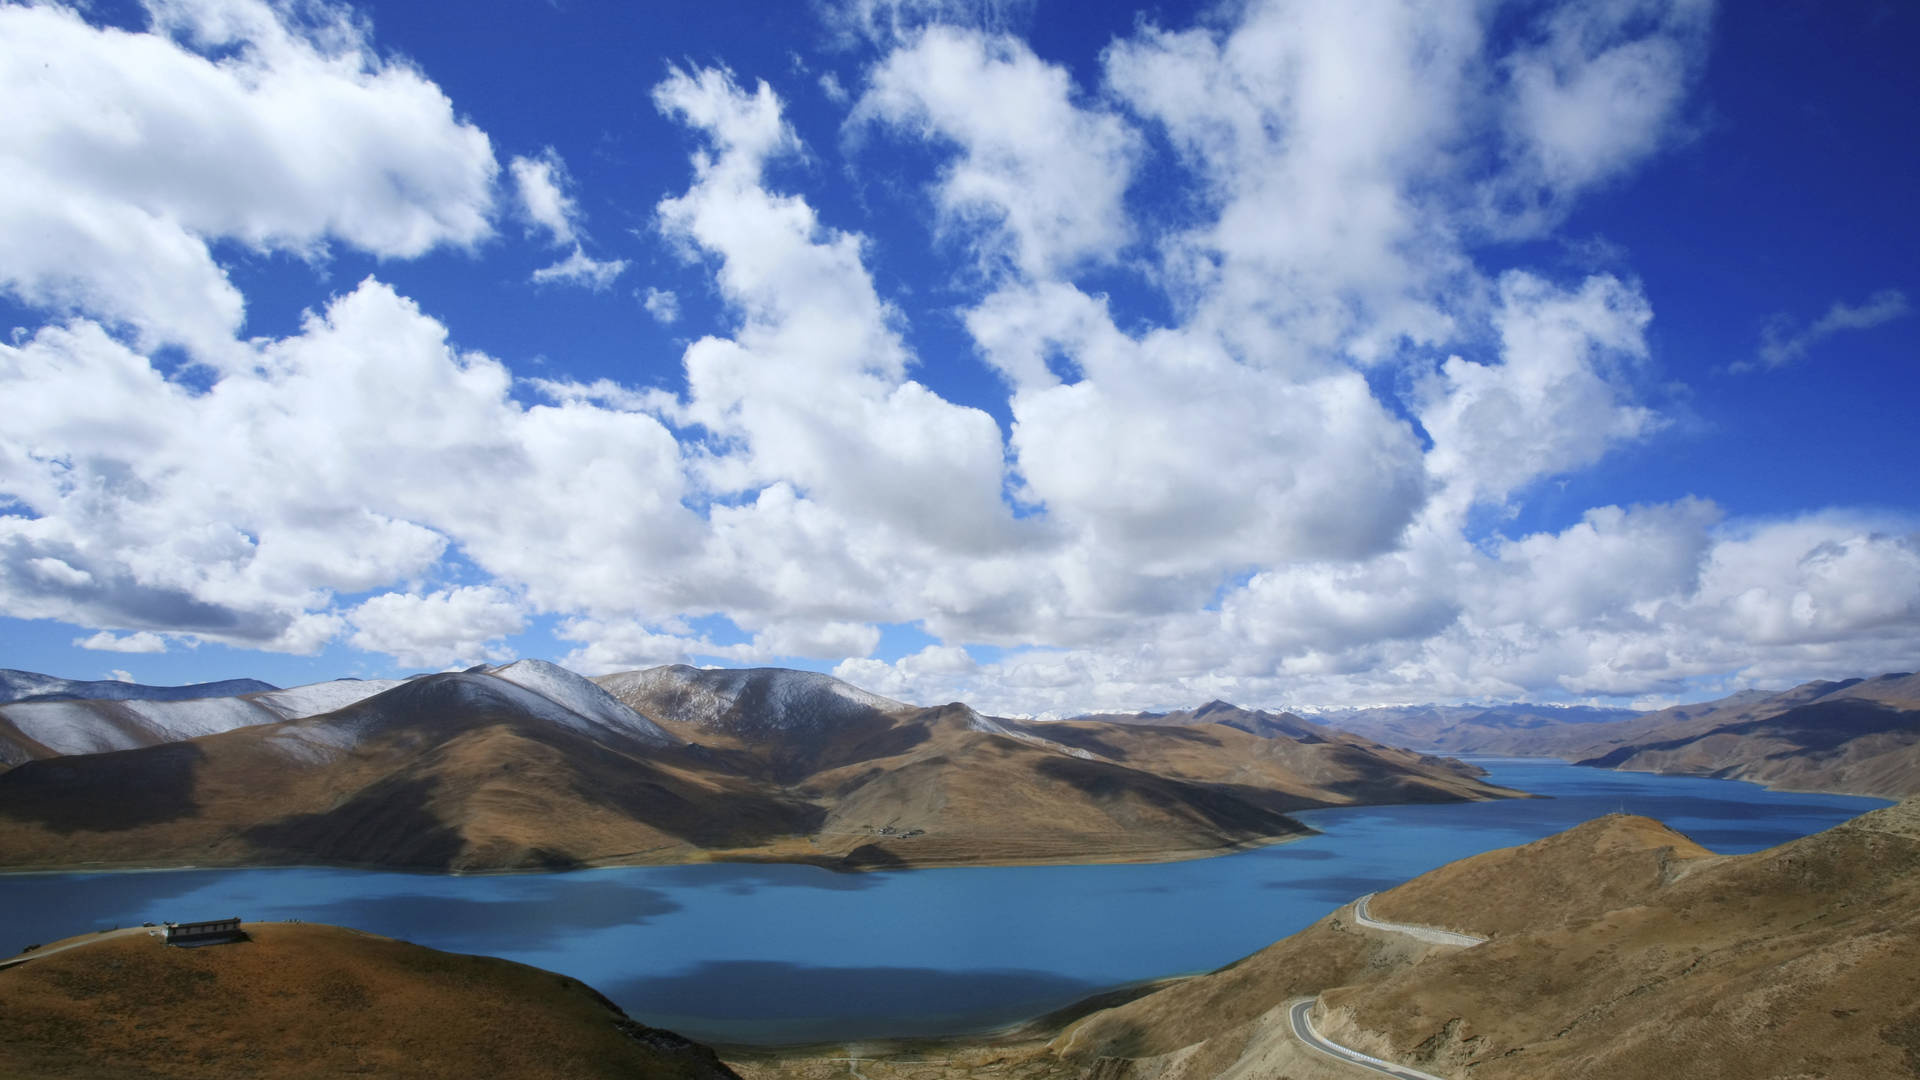 Tibetan Highlands, China Tibet journey, Famous mountaineers, Adventure travel, 1920x1080 Full HD Desktop